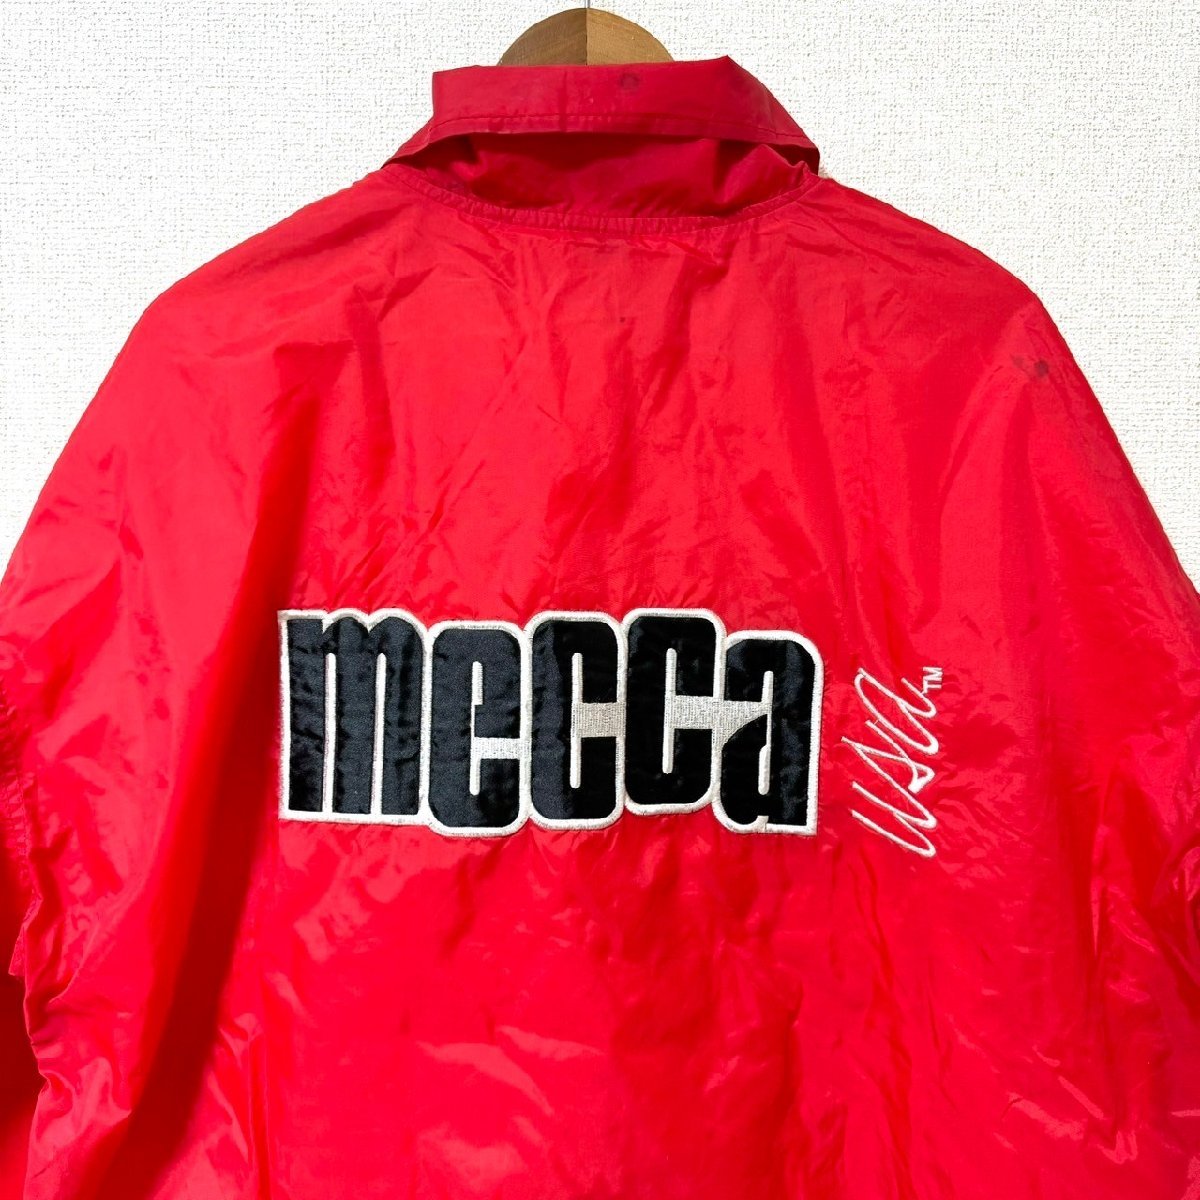 (^w^)b MECCA メッカ 80s 90s ヴィンテージ コーチ ジャケット ジャンパー 裏地付き 裾 ドローコード ボタン ロゴ 刺繍 レッド 8076EE_画像5